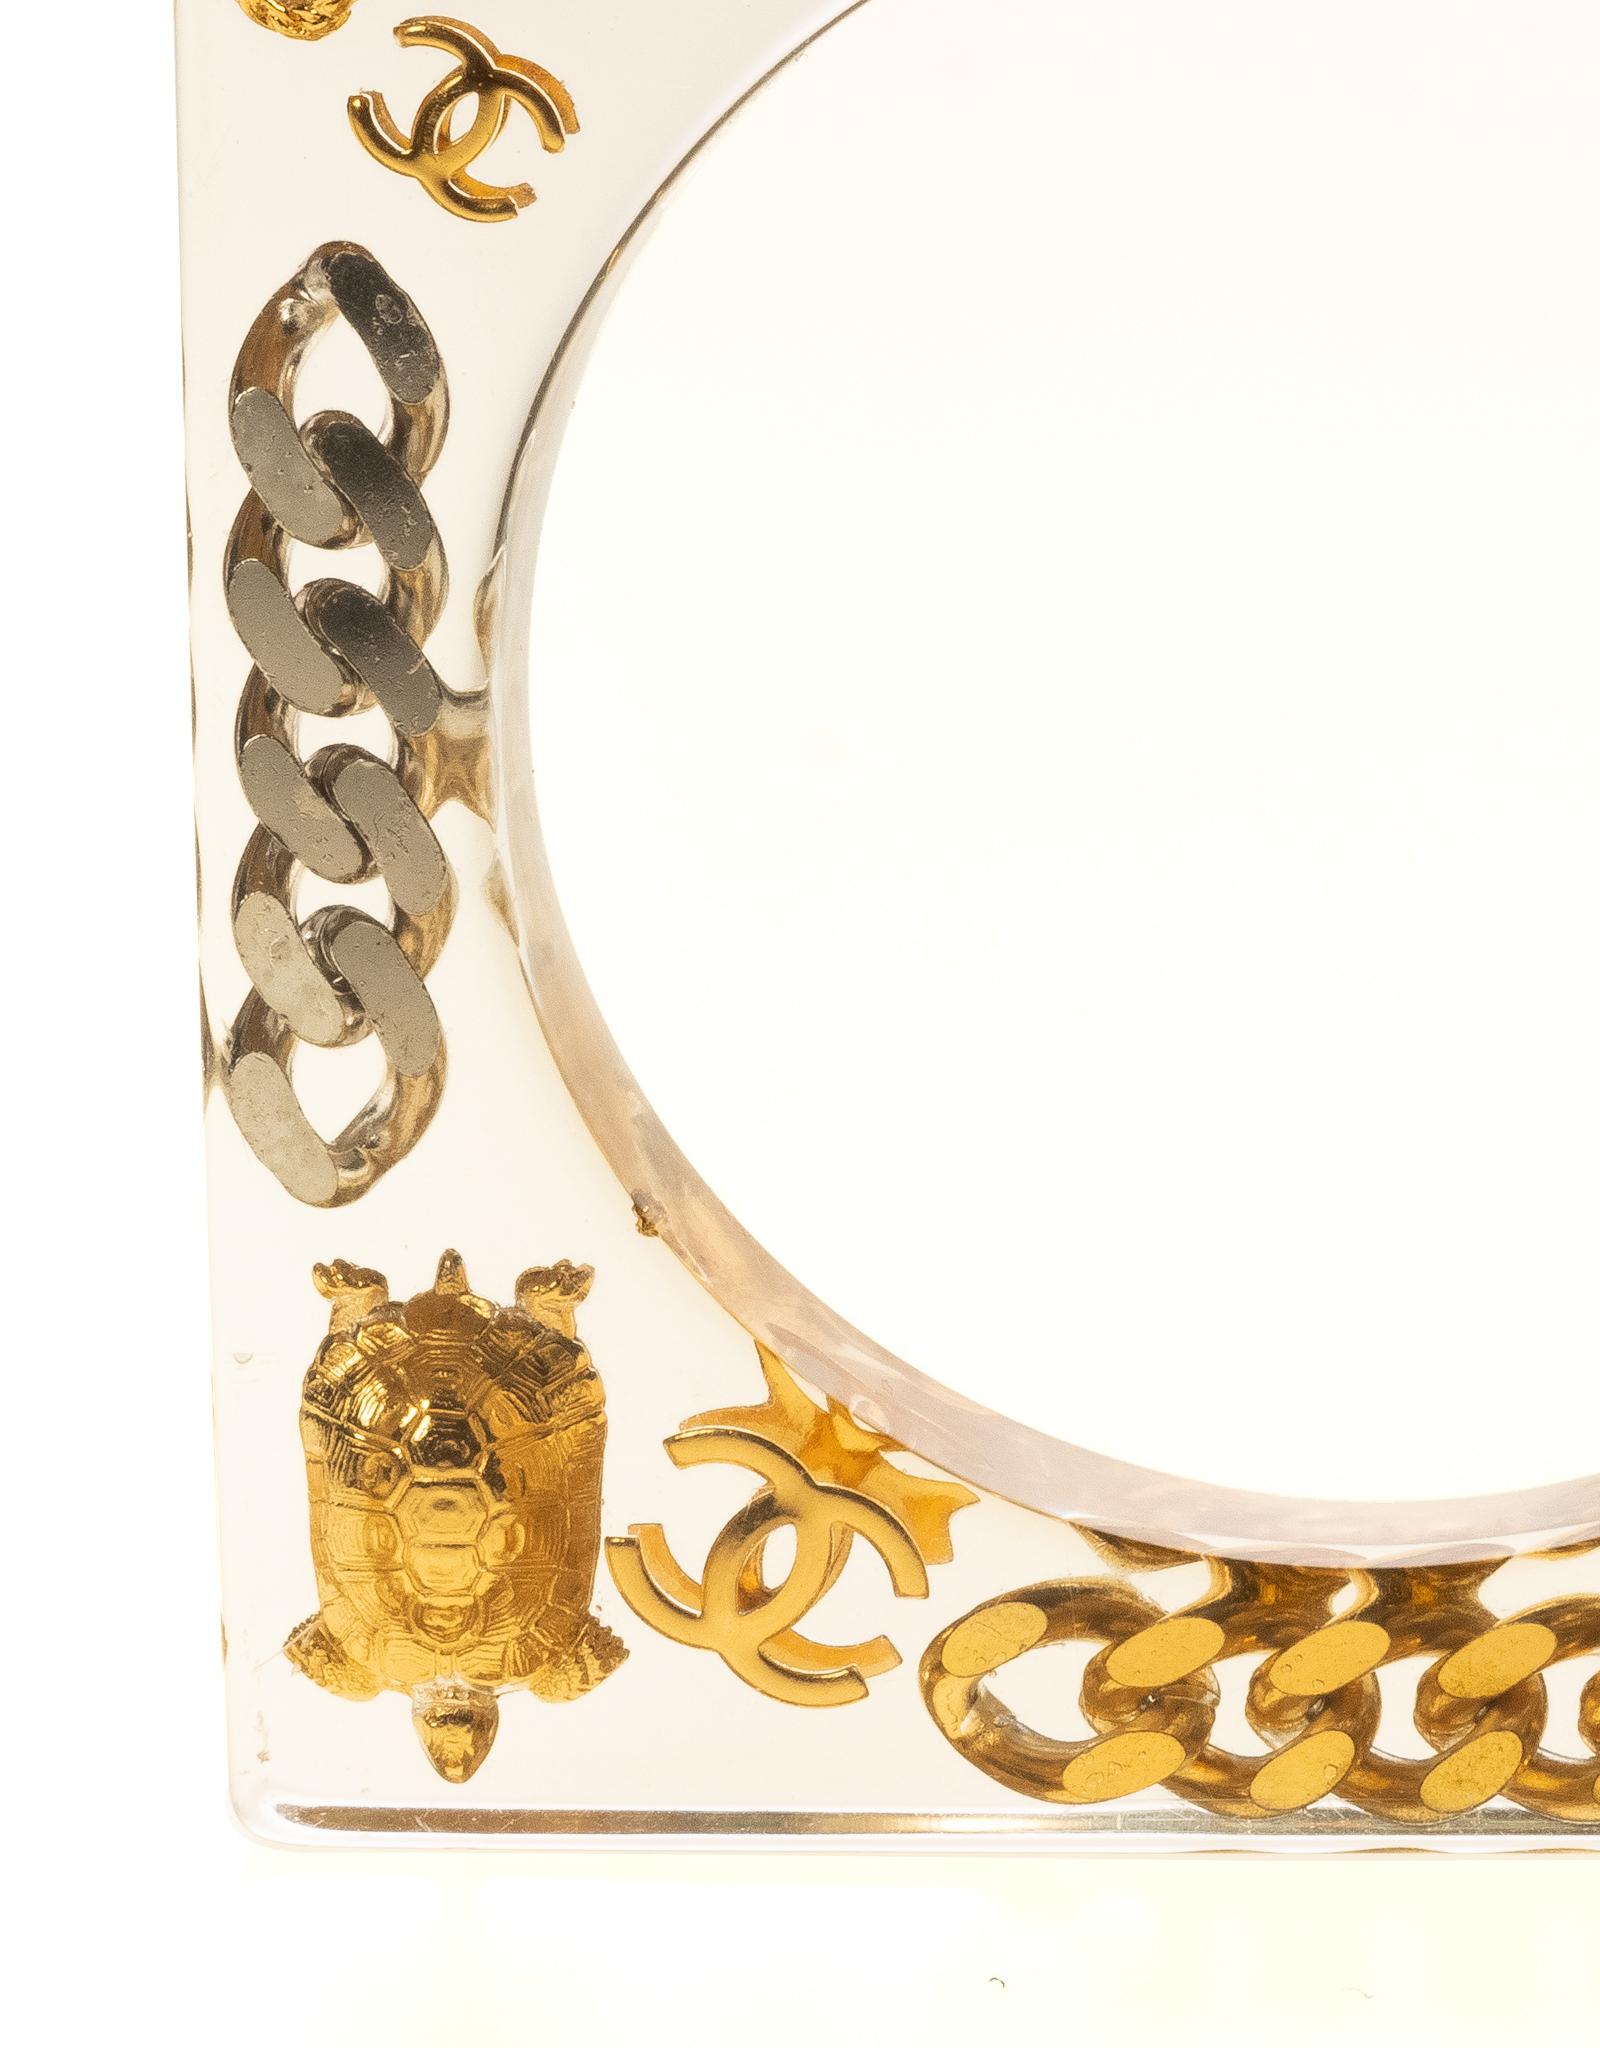 Le bracelet est composé de matériaux en plexi lucite et d'éléments en or et en argent, avec de nombreuses breloques emblématiques intégrées au bracelet. Les breloques incorporées sont les lettres CHANEL, le flacon de parfum, le n°5, la chaîne, la